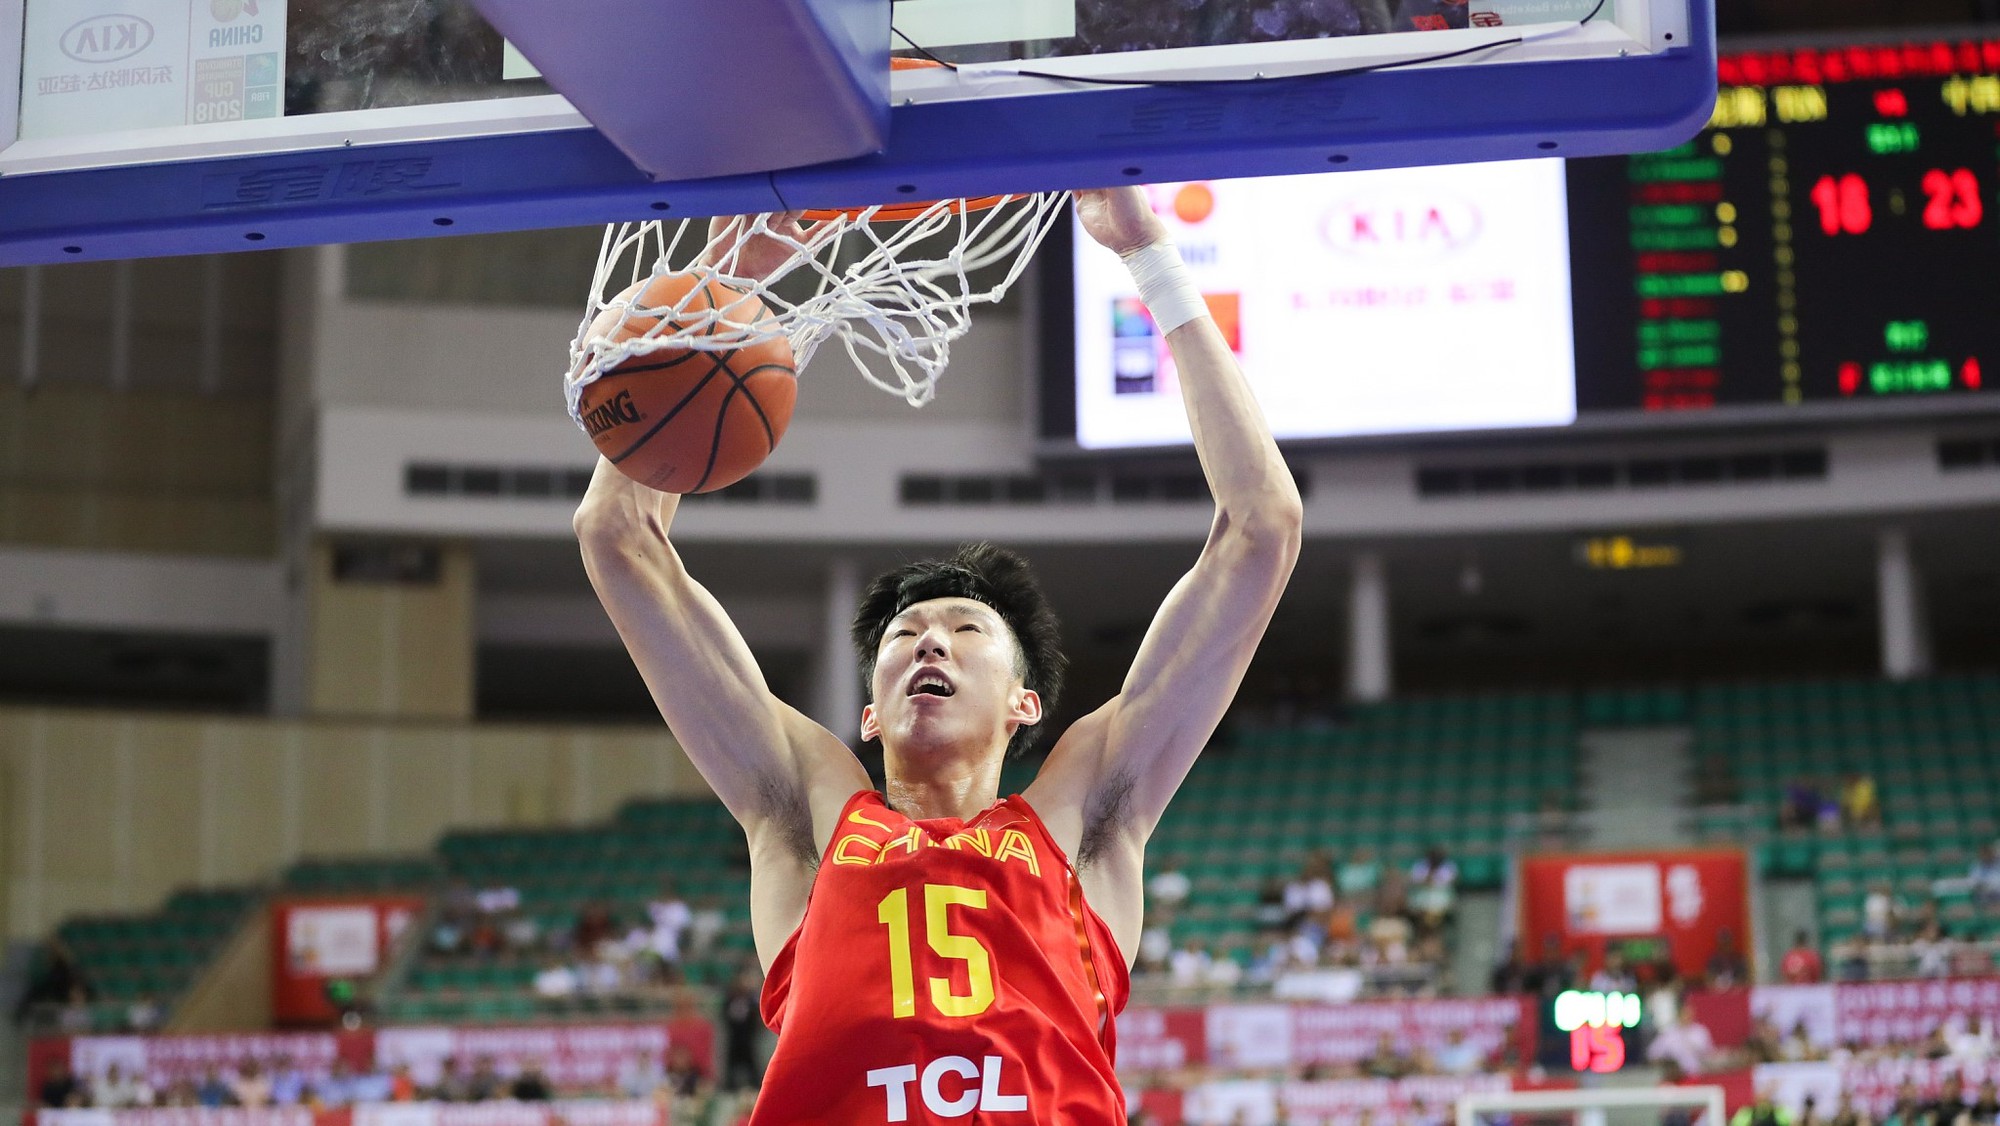 Bóng rổ Trung Quốc tham vọng vô địch ASIAD 18 với đội hình cực mạnh - Ảnh 2.